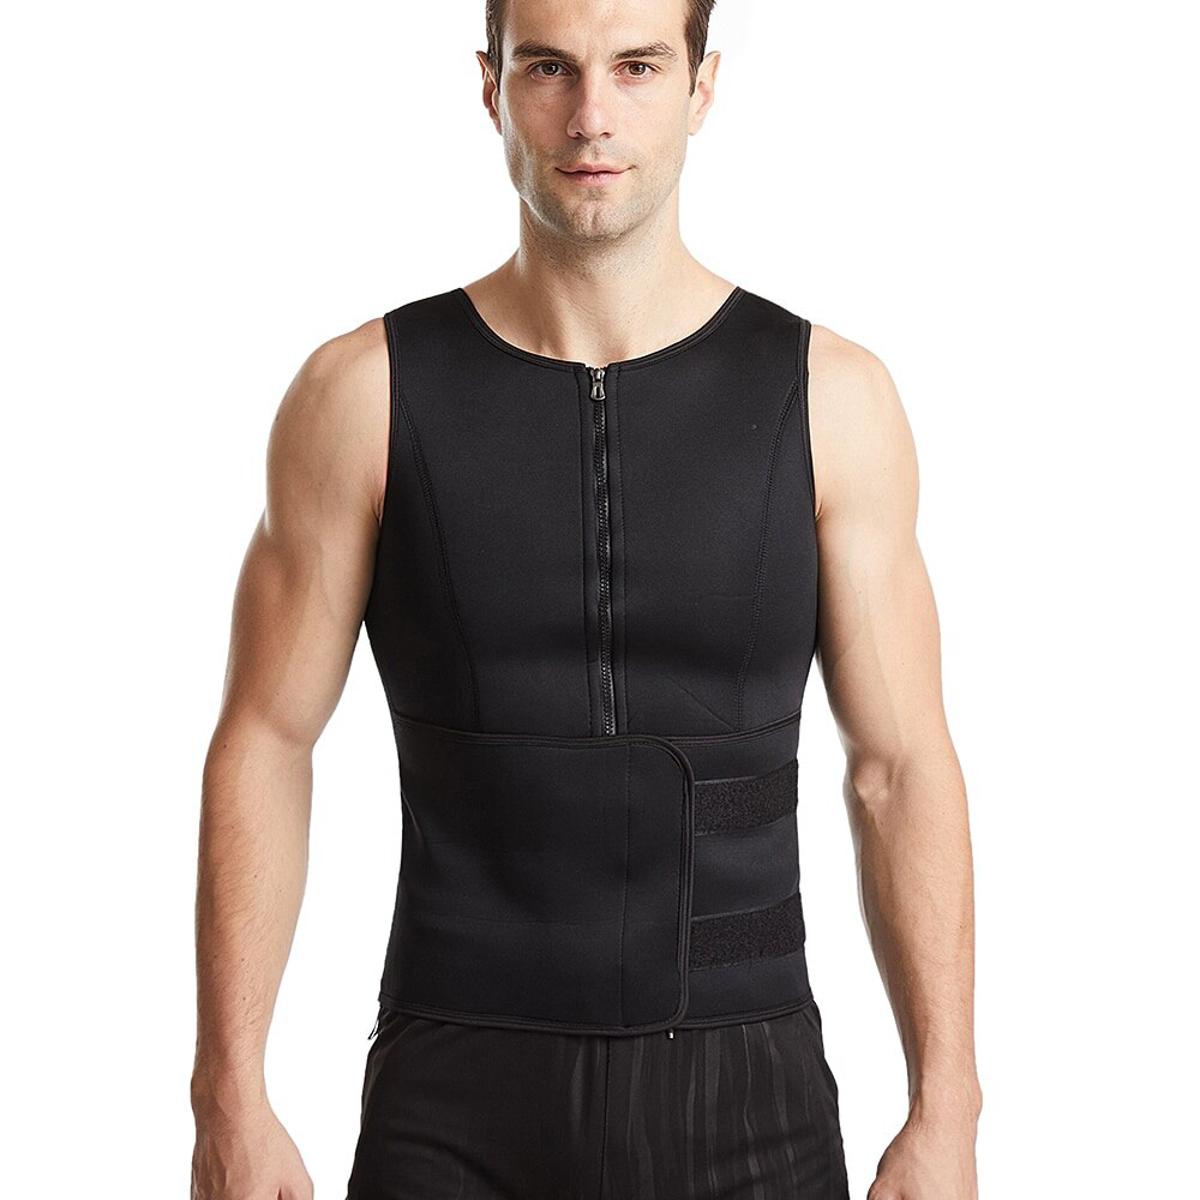  Sauna Vest Waist Trainer For Men - Mens Sauna Suit Double  Sweat Belt Body Shaper For Belly Fat Slimming Gym Workout Faja Para Hombre  Plus Size 5XL